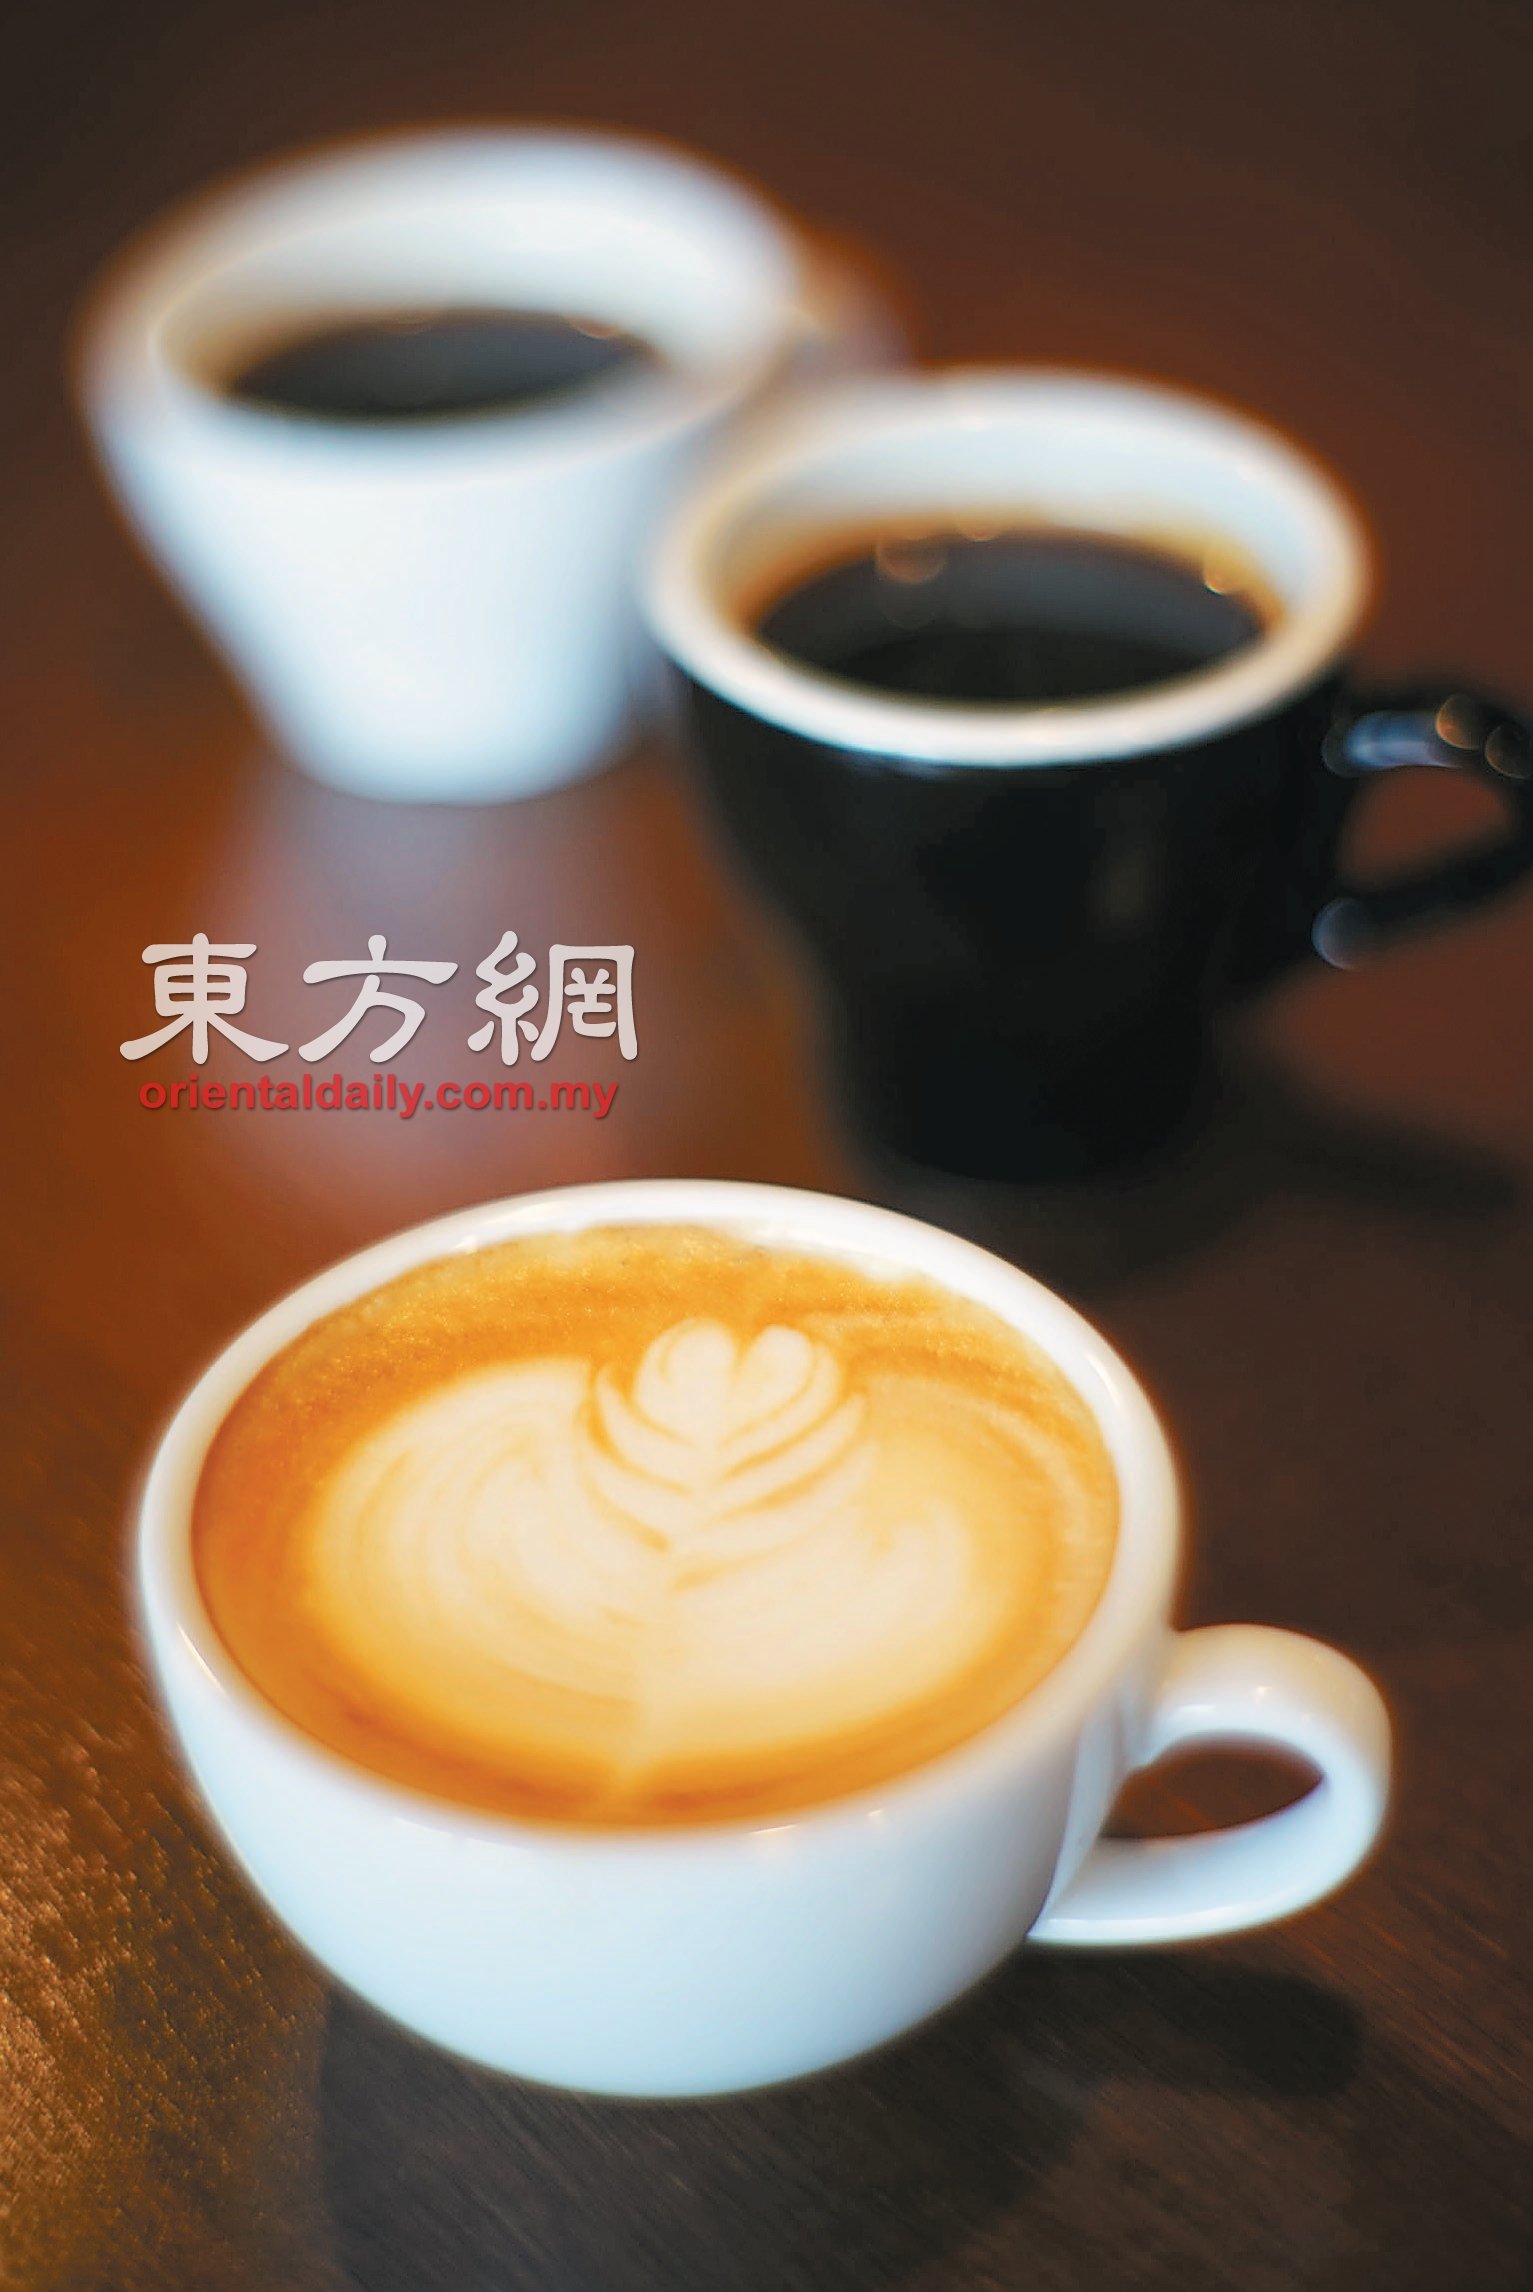 精品咖啡是指从种子到杯子的（seed to cup）生产过程。